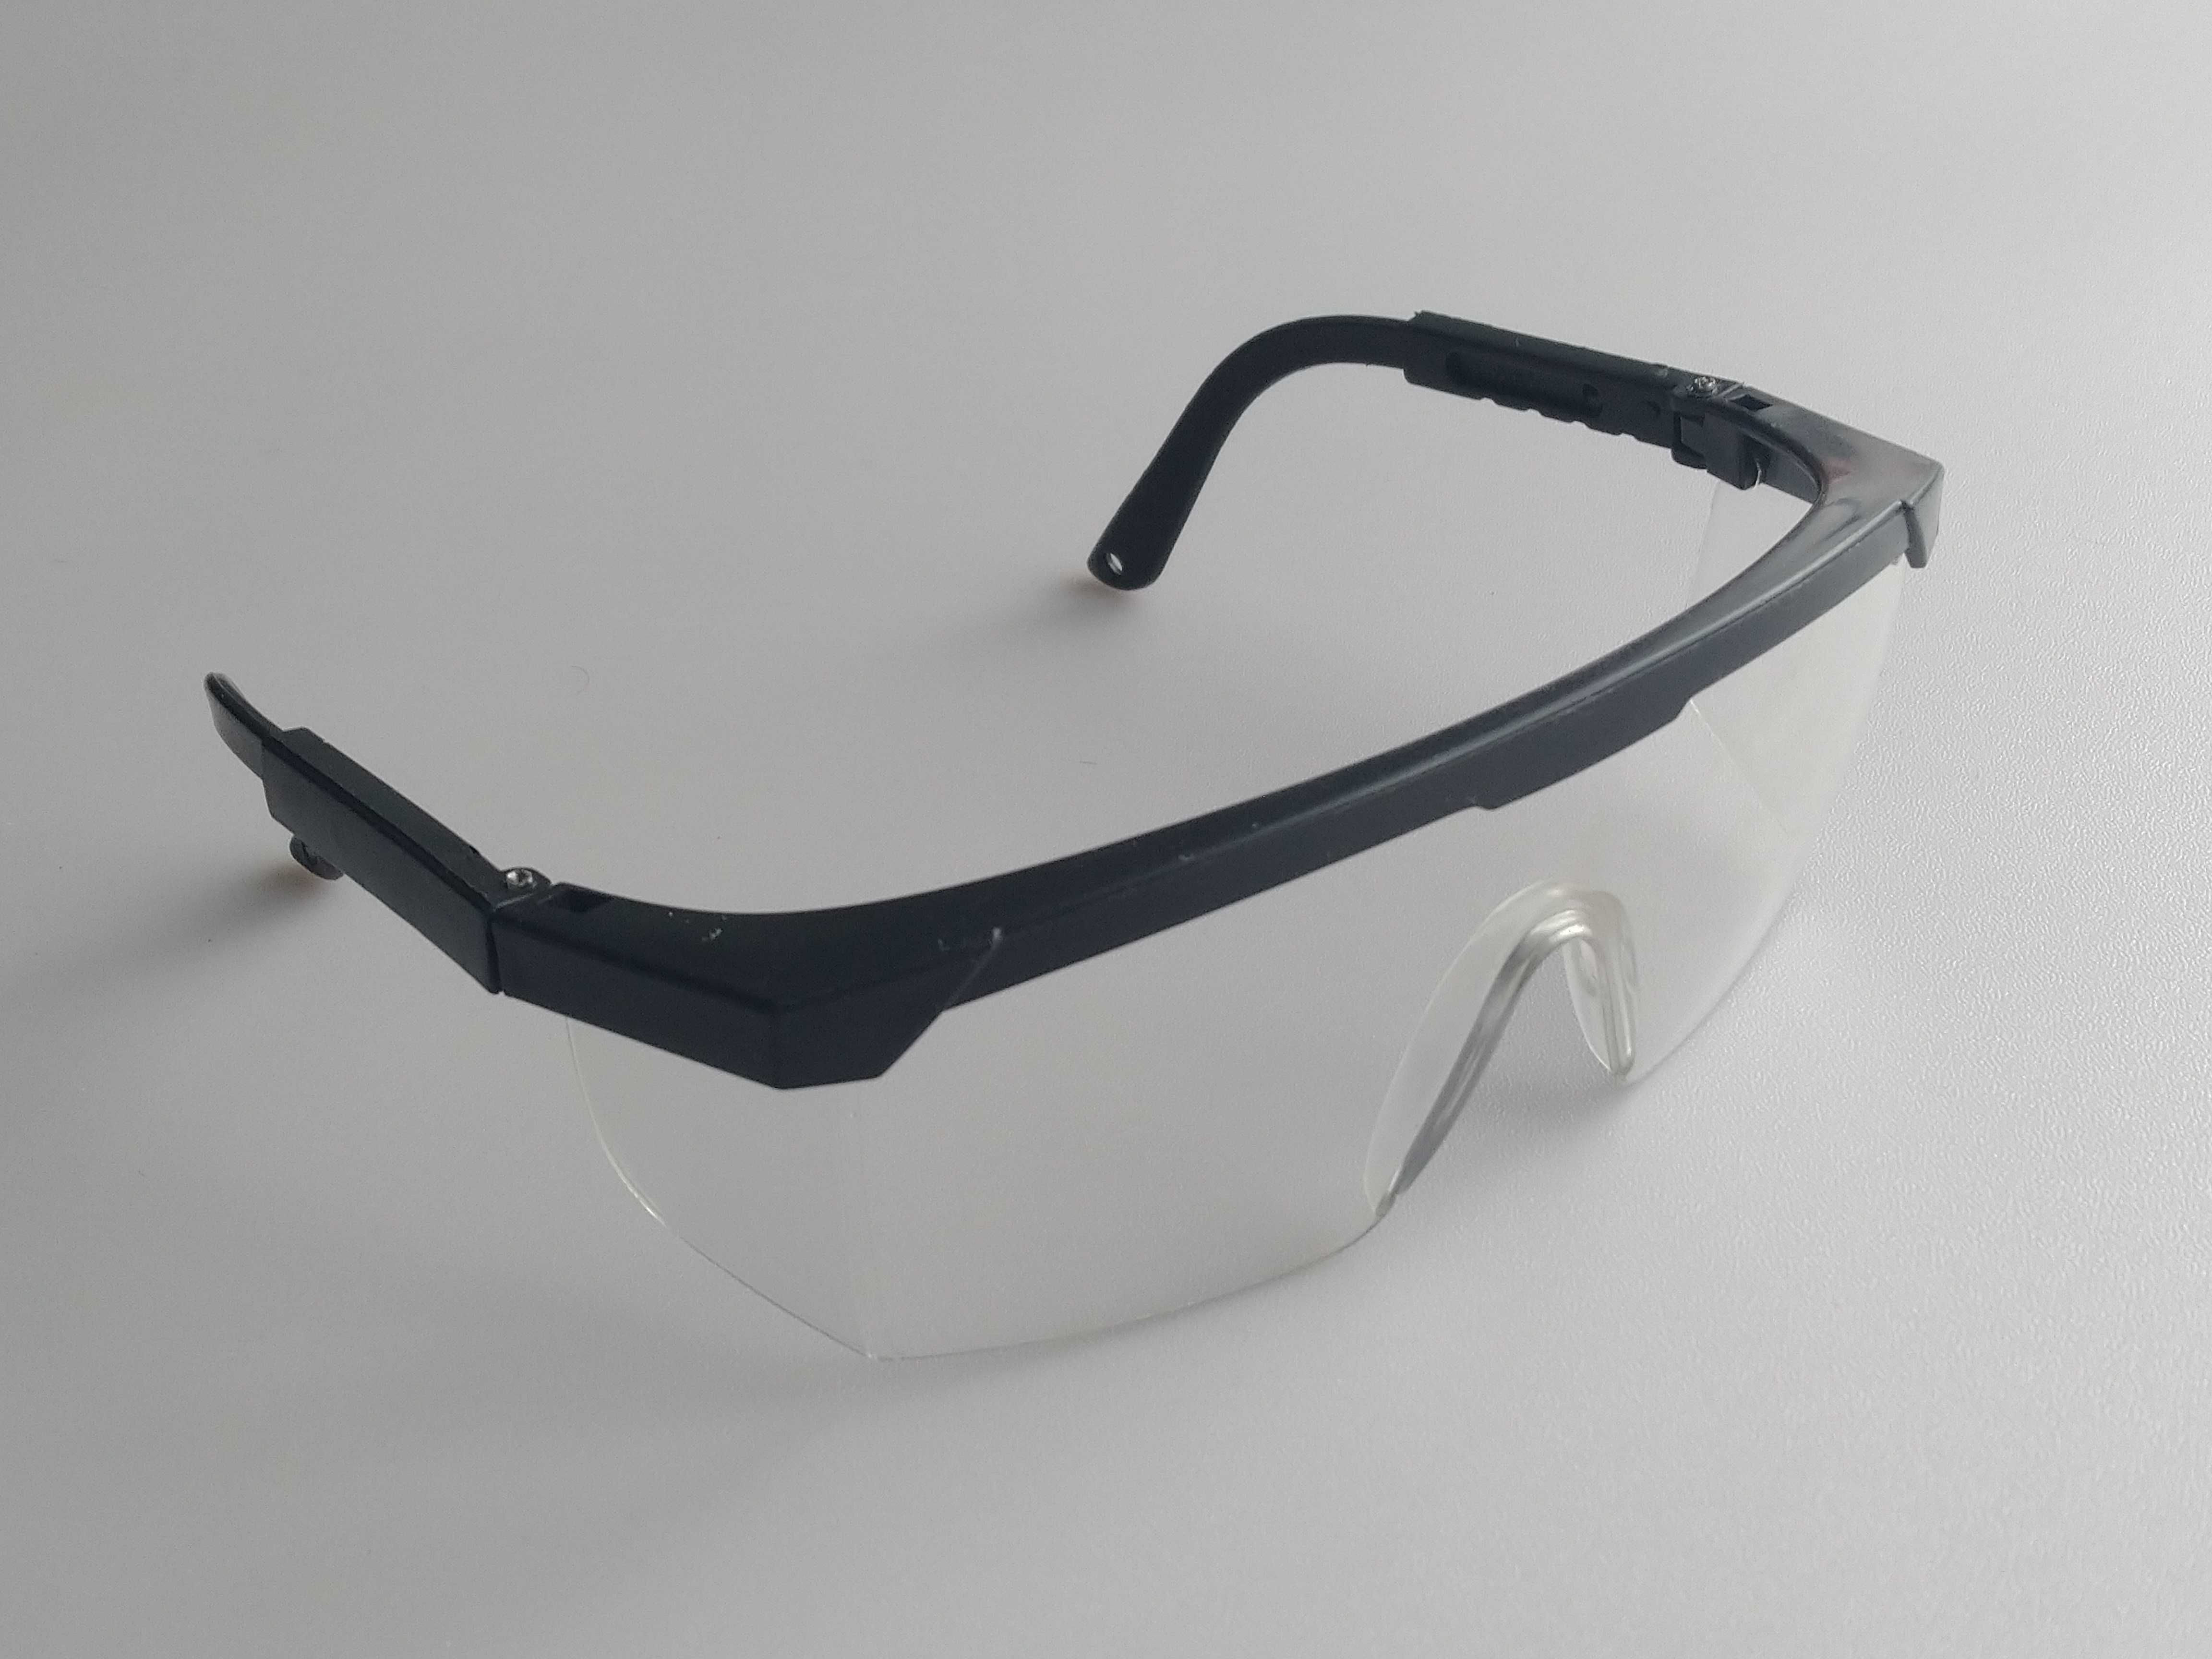 Захисні окуляри прозорі пластикові